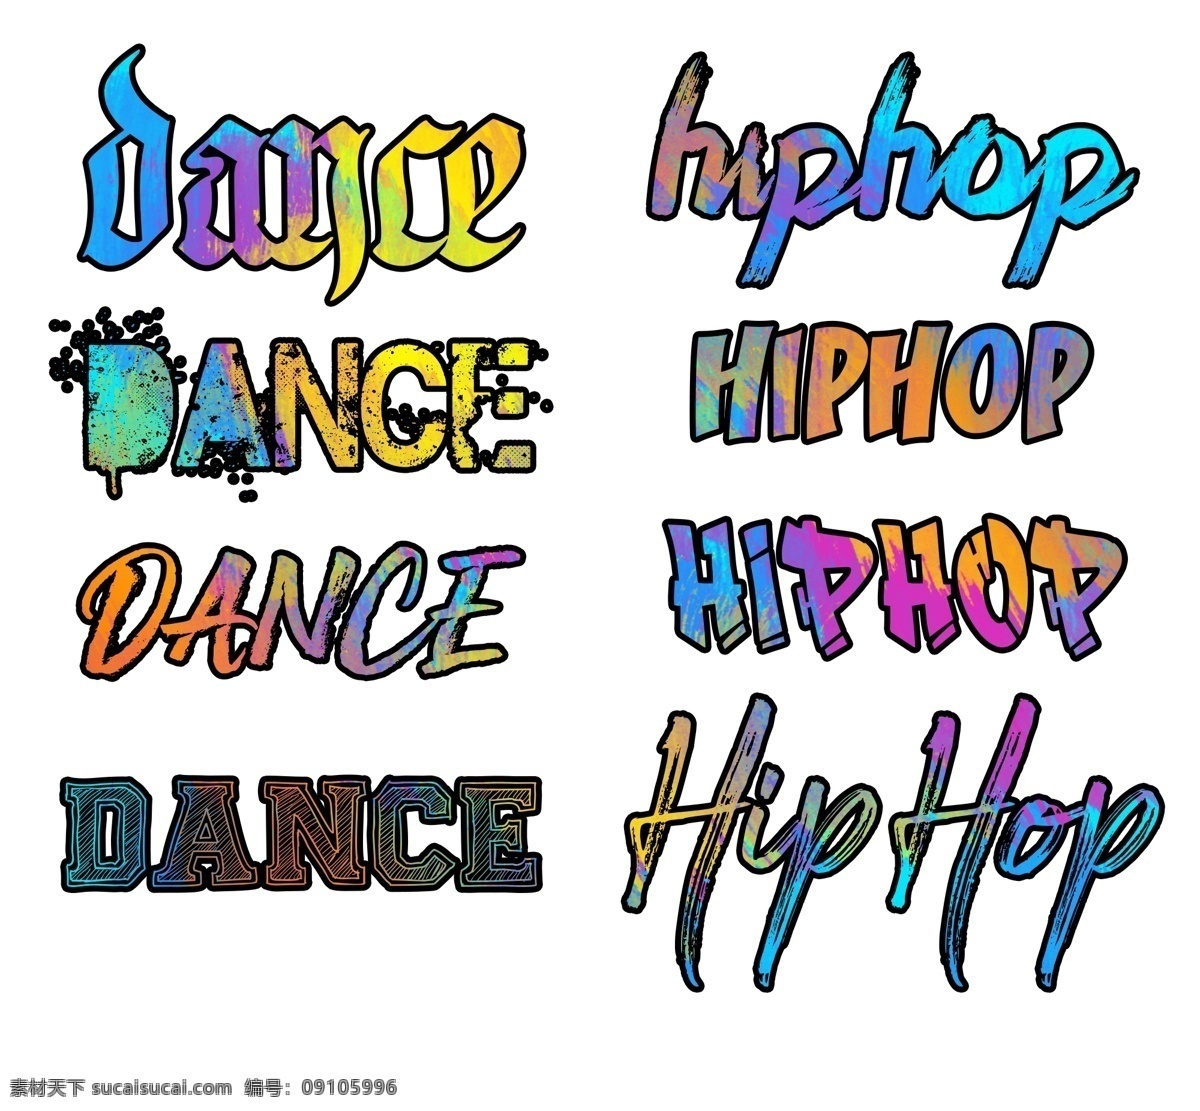 涂鸦 艺术 字 dance hiphop 涂鸦字 街舞 英文字体 艺术字 潮字体 涂鸦字体 街舞字体 涂鸦类 分层 笔刷字 水墨字 喷溅 字体